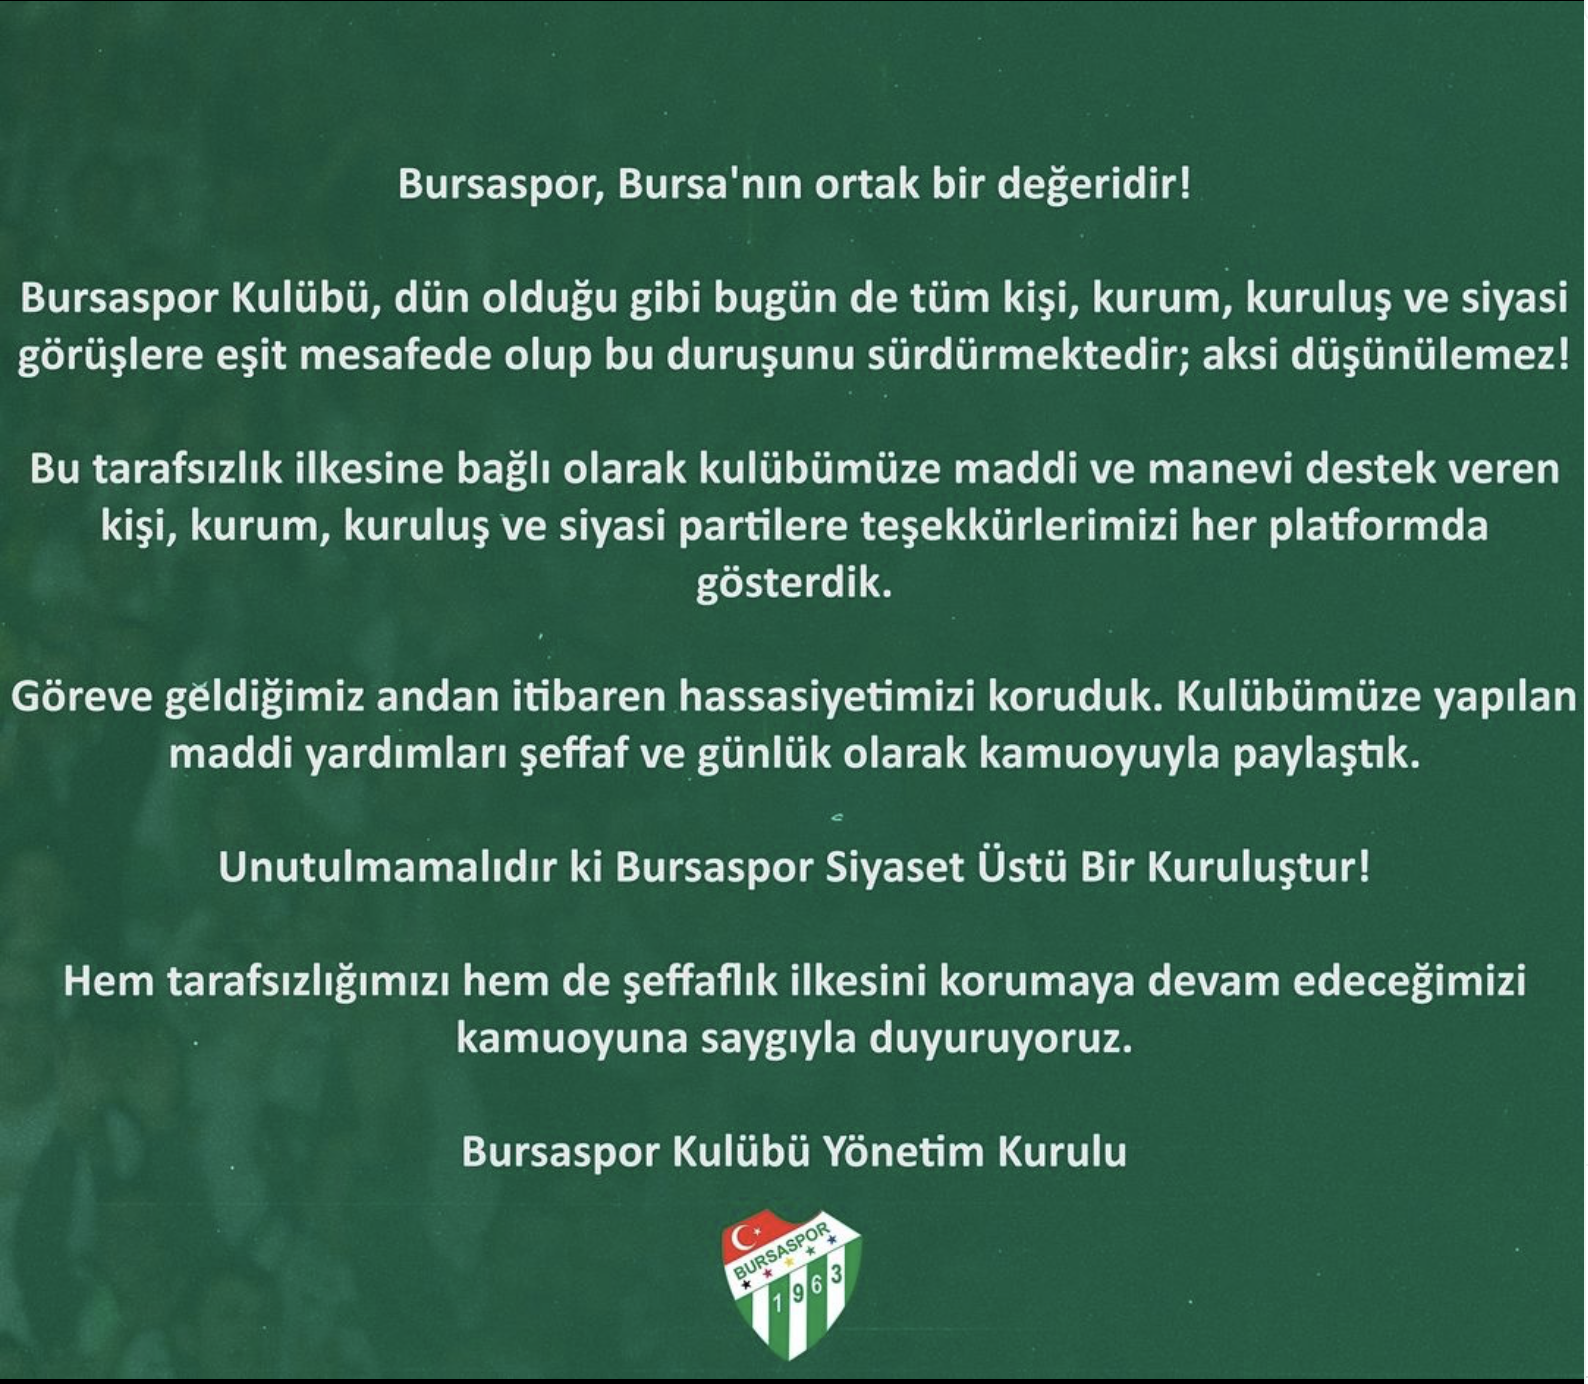 Bursaspor Kulübü: “Bursaspor Siyaset Üstü Bir Kuruluştur”